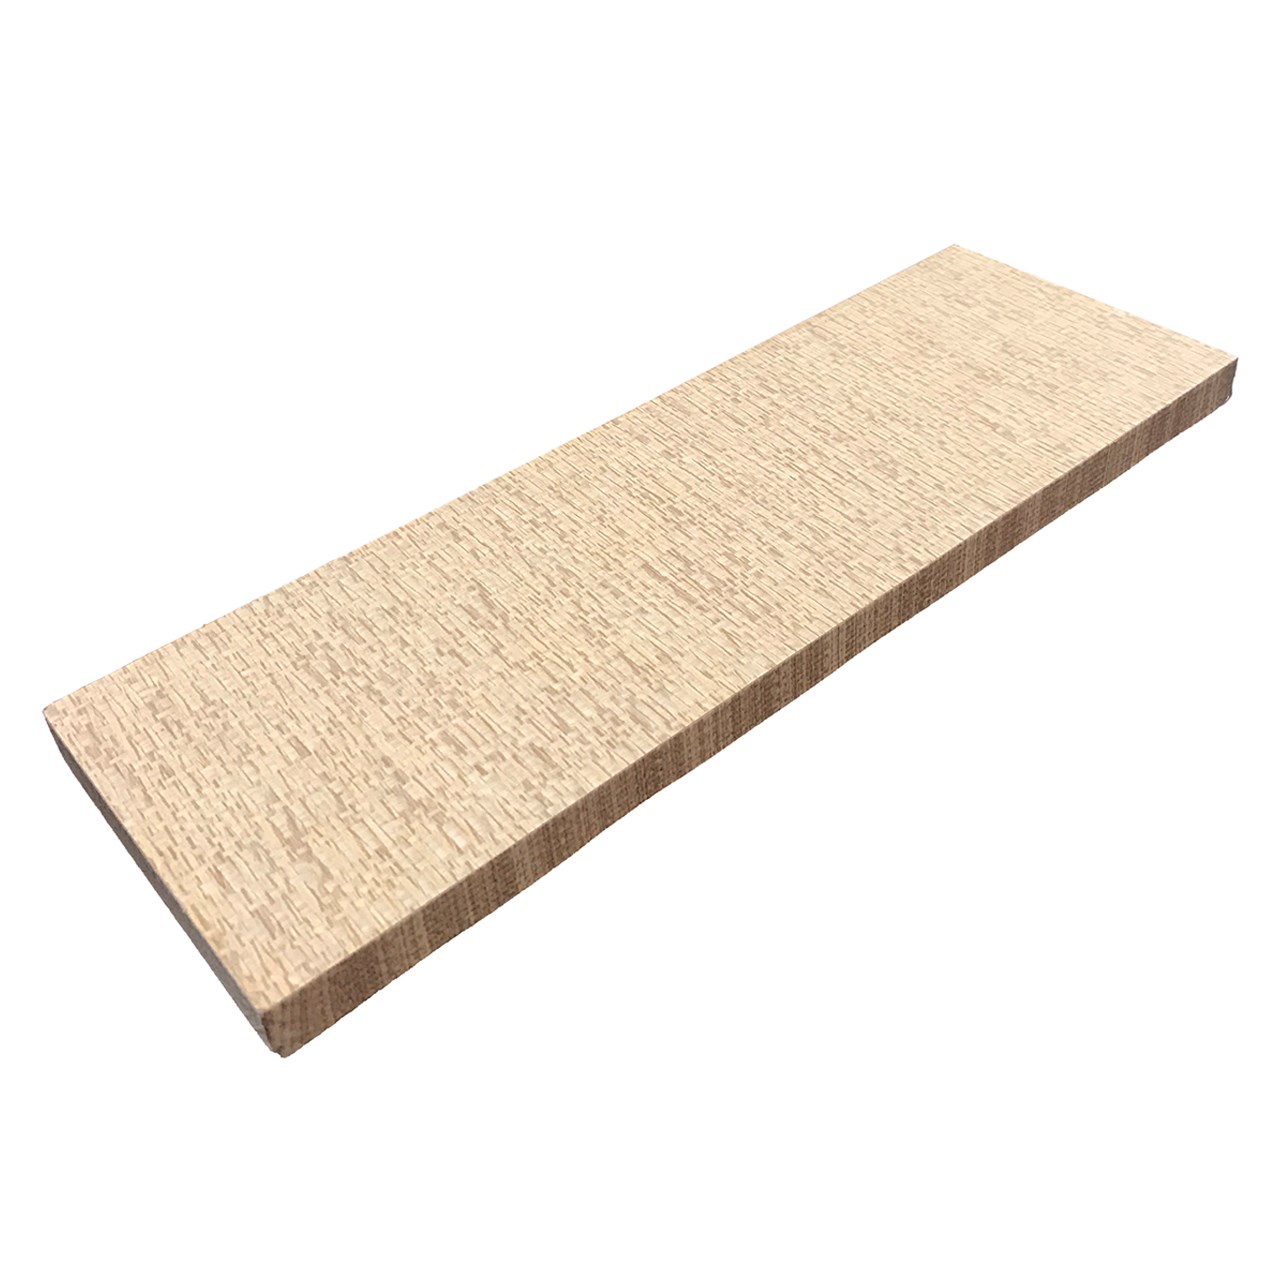 طاقچه دیواری طرح چوب گردو سایز 1  × 10 × 30 سانتی متر